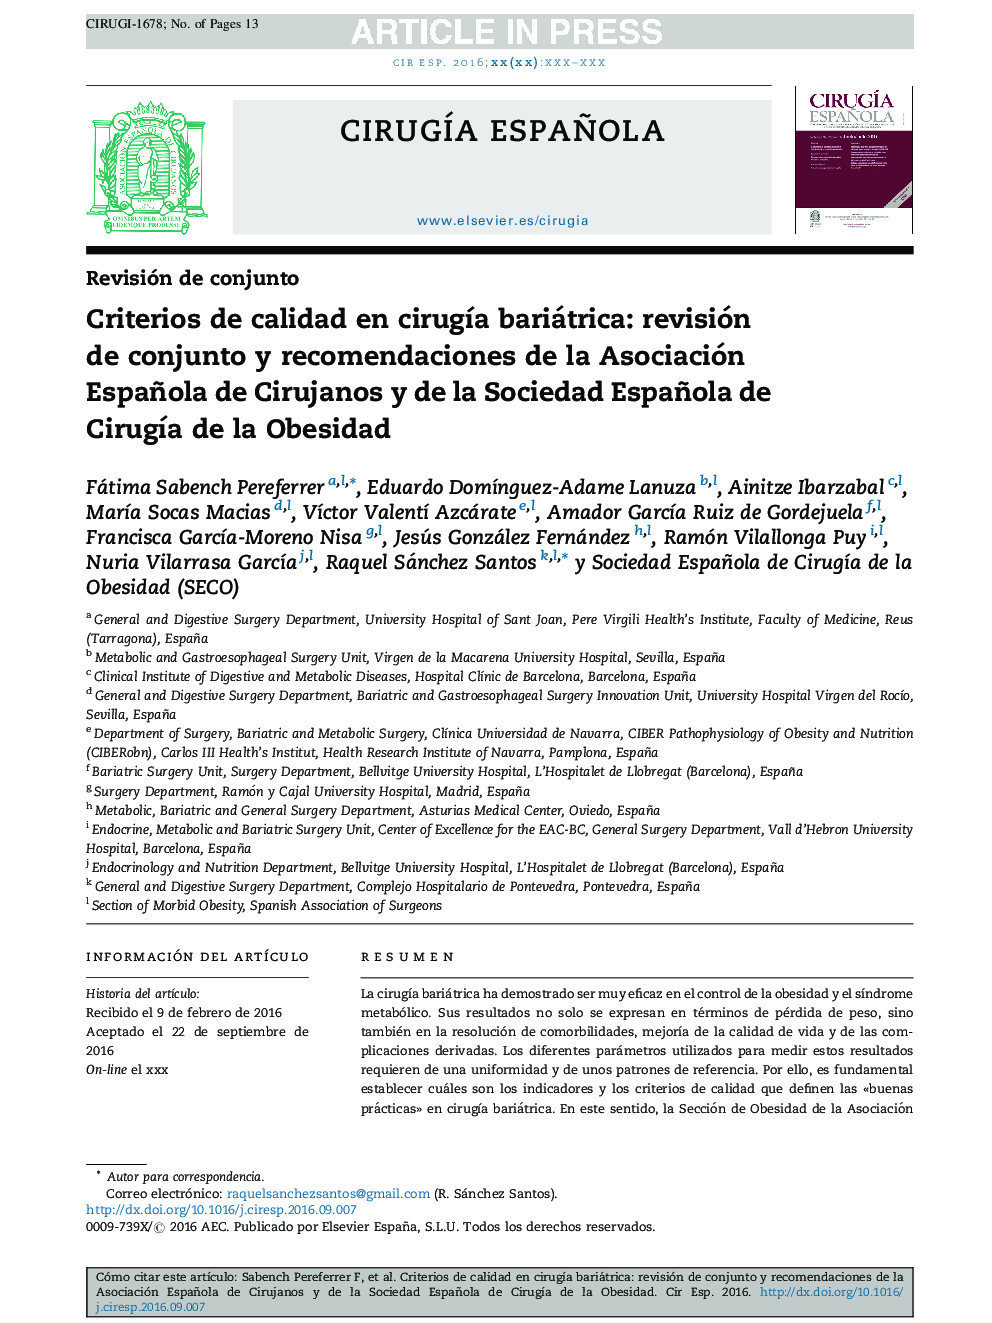 معیارهای کیفی در عمل جراحی بای بای: بررسی مجموعه و توصیه های انجمن اسپانیایی + جراحان و جامعه اسپانیایی + جراحی چاقی 